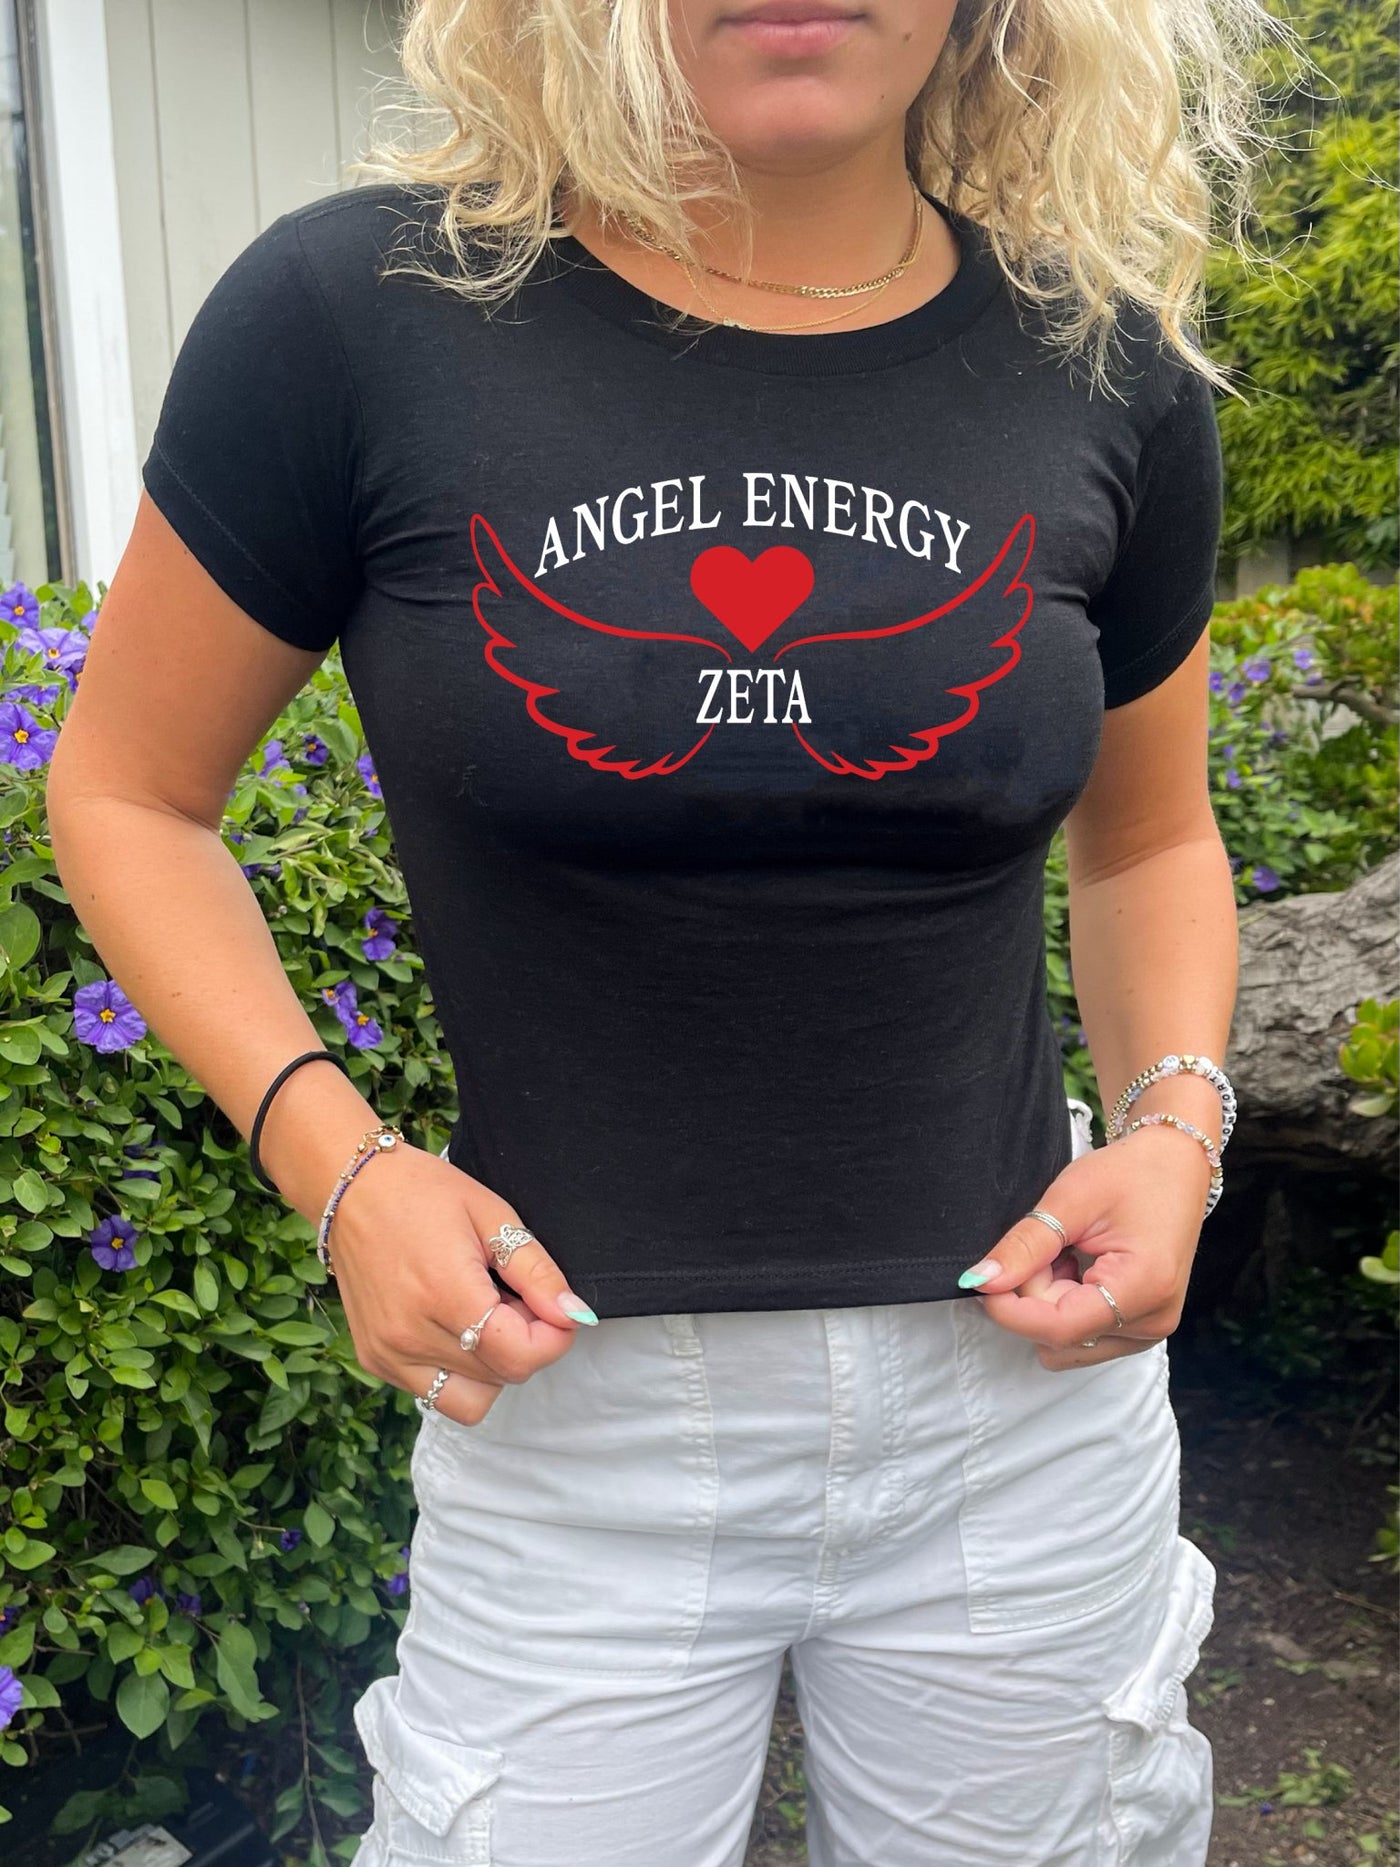 Zeta Tau Alpha Angel Energy Sorority Baby Tee Crop Top